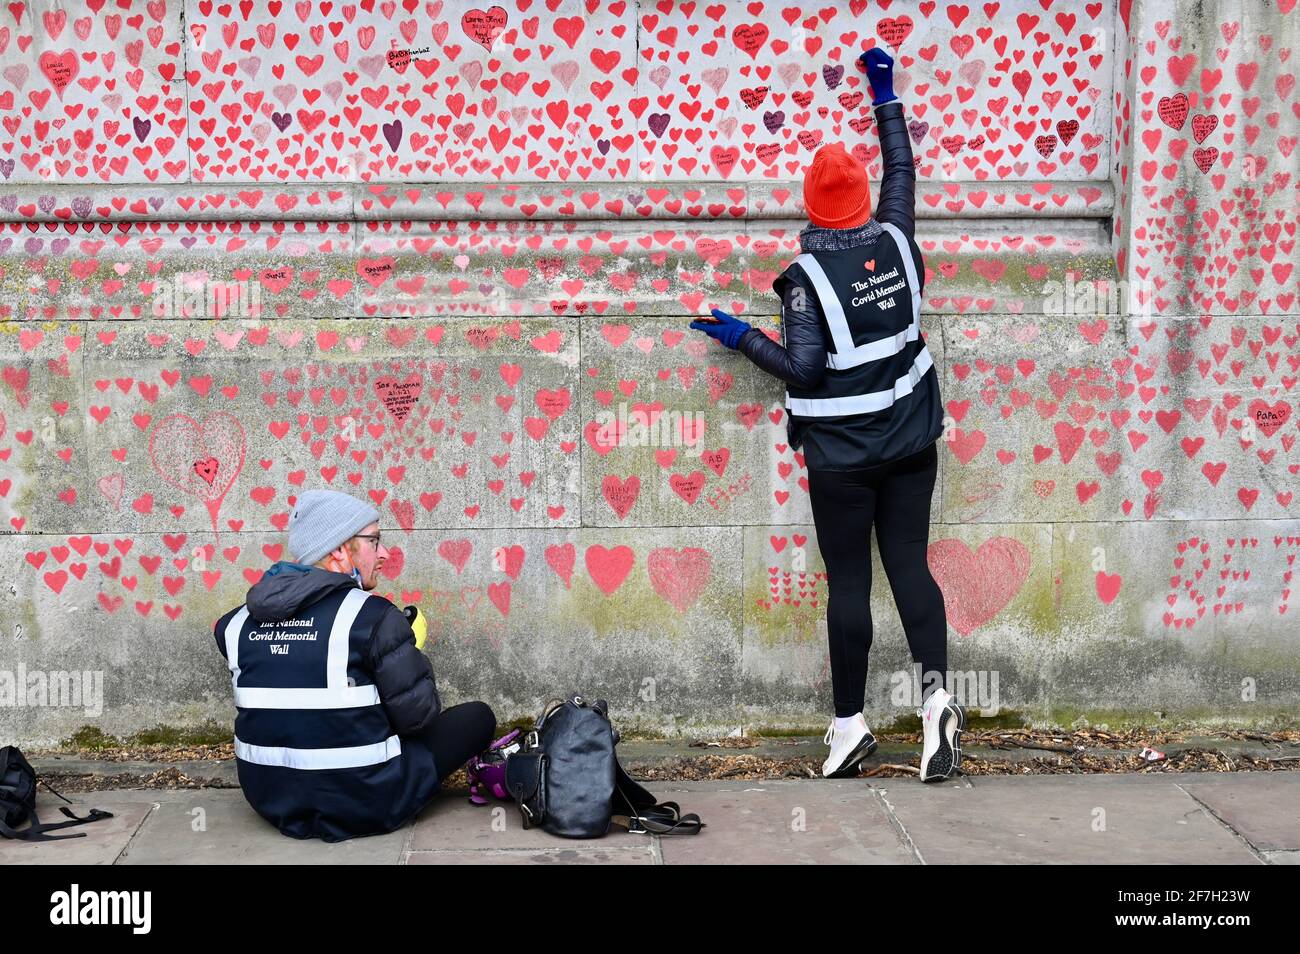 El Muro Conmemorativo Nacional Covid, alrededor de 130.000 corazones han sido pintados en una sección de un kilómetro de largo de la pared frente a las Casas del Parlamento como un monumento a los seres queridos que han muerto durante la pandemia del Coronavirus. Hospital St Thomas, Westminster, Londres. REINO UNIDO Foto de stock